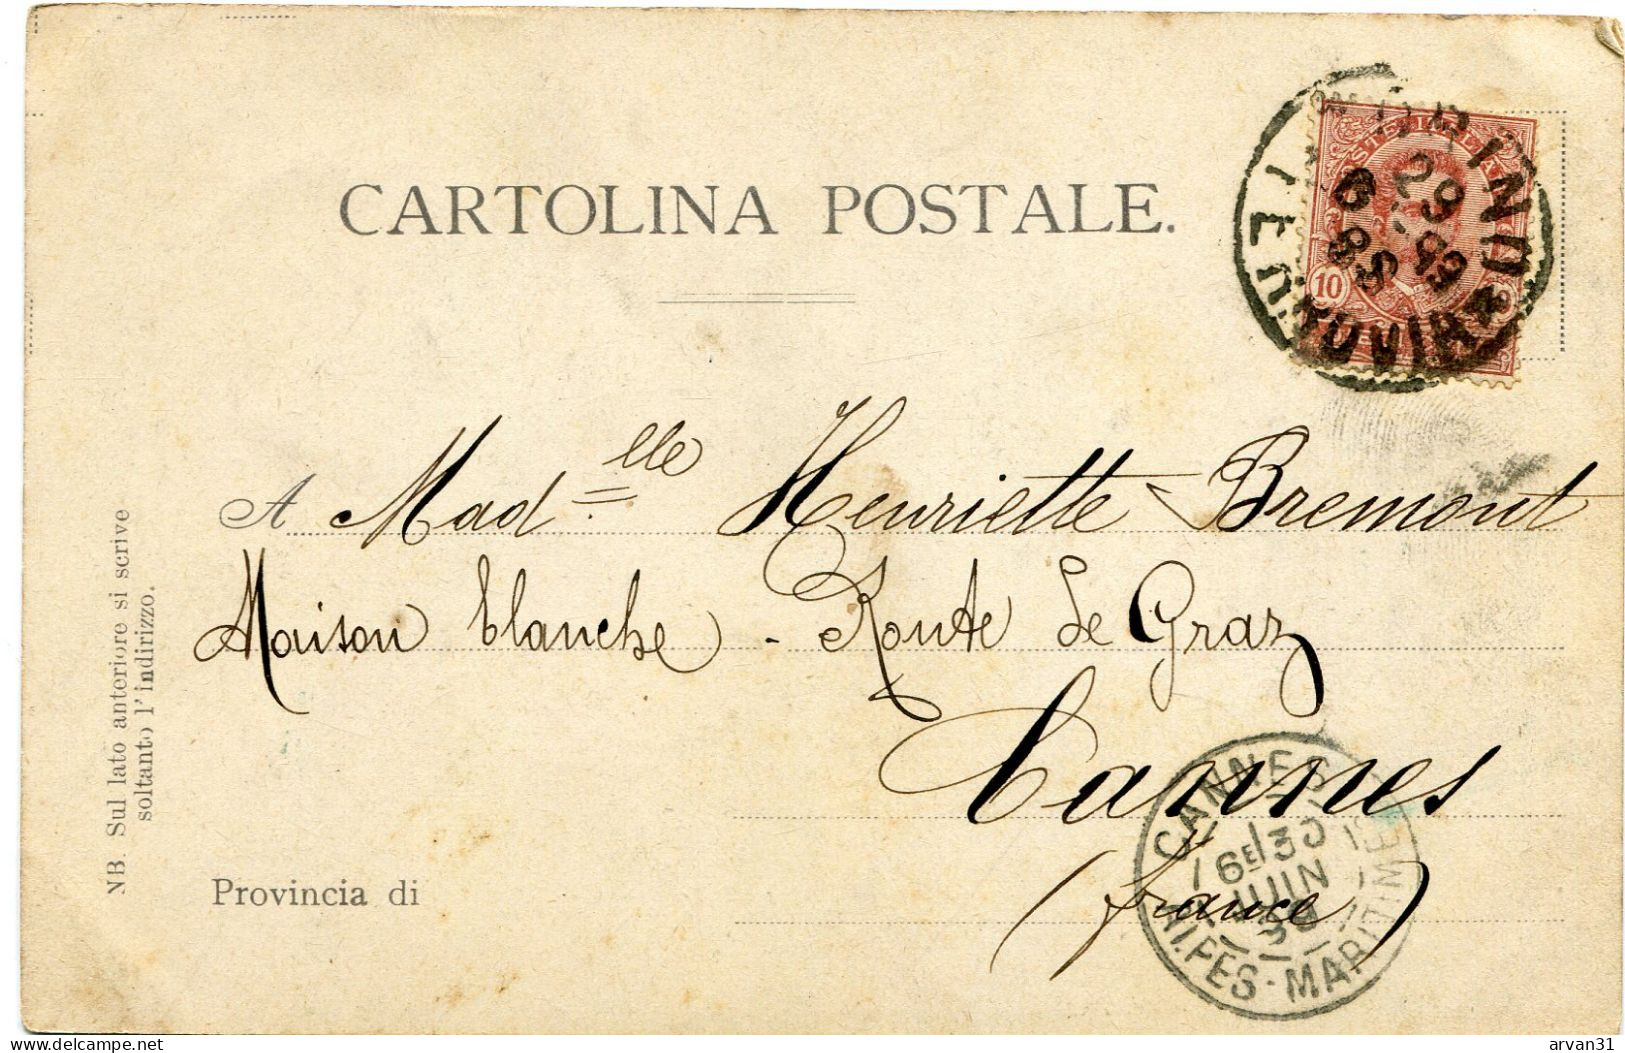 TORINO - RICORDO Di SUPERGA 1 - CARTOLINA PRECURSORE RARO Del 1899 - POSSIBILITÀ DI SCONTO E SPEDIZIONE GRATUITA - - Viste Panoramiche, Panorama